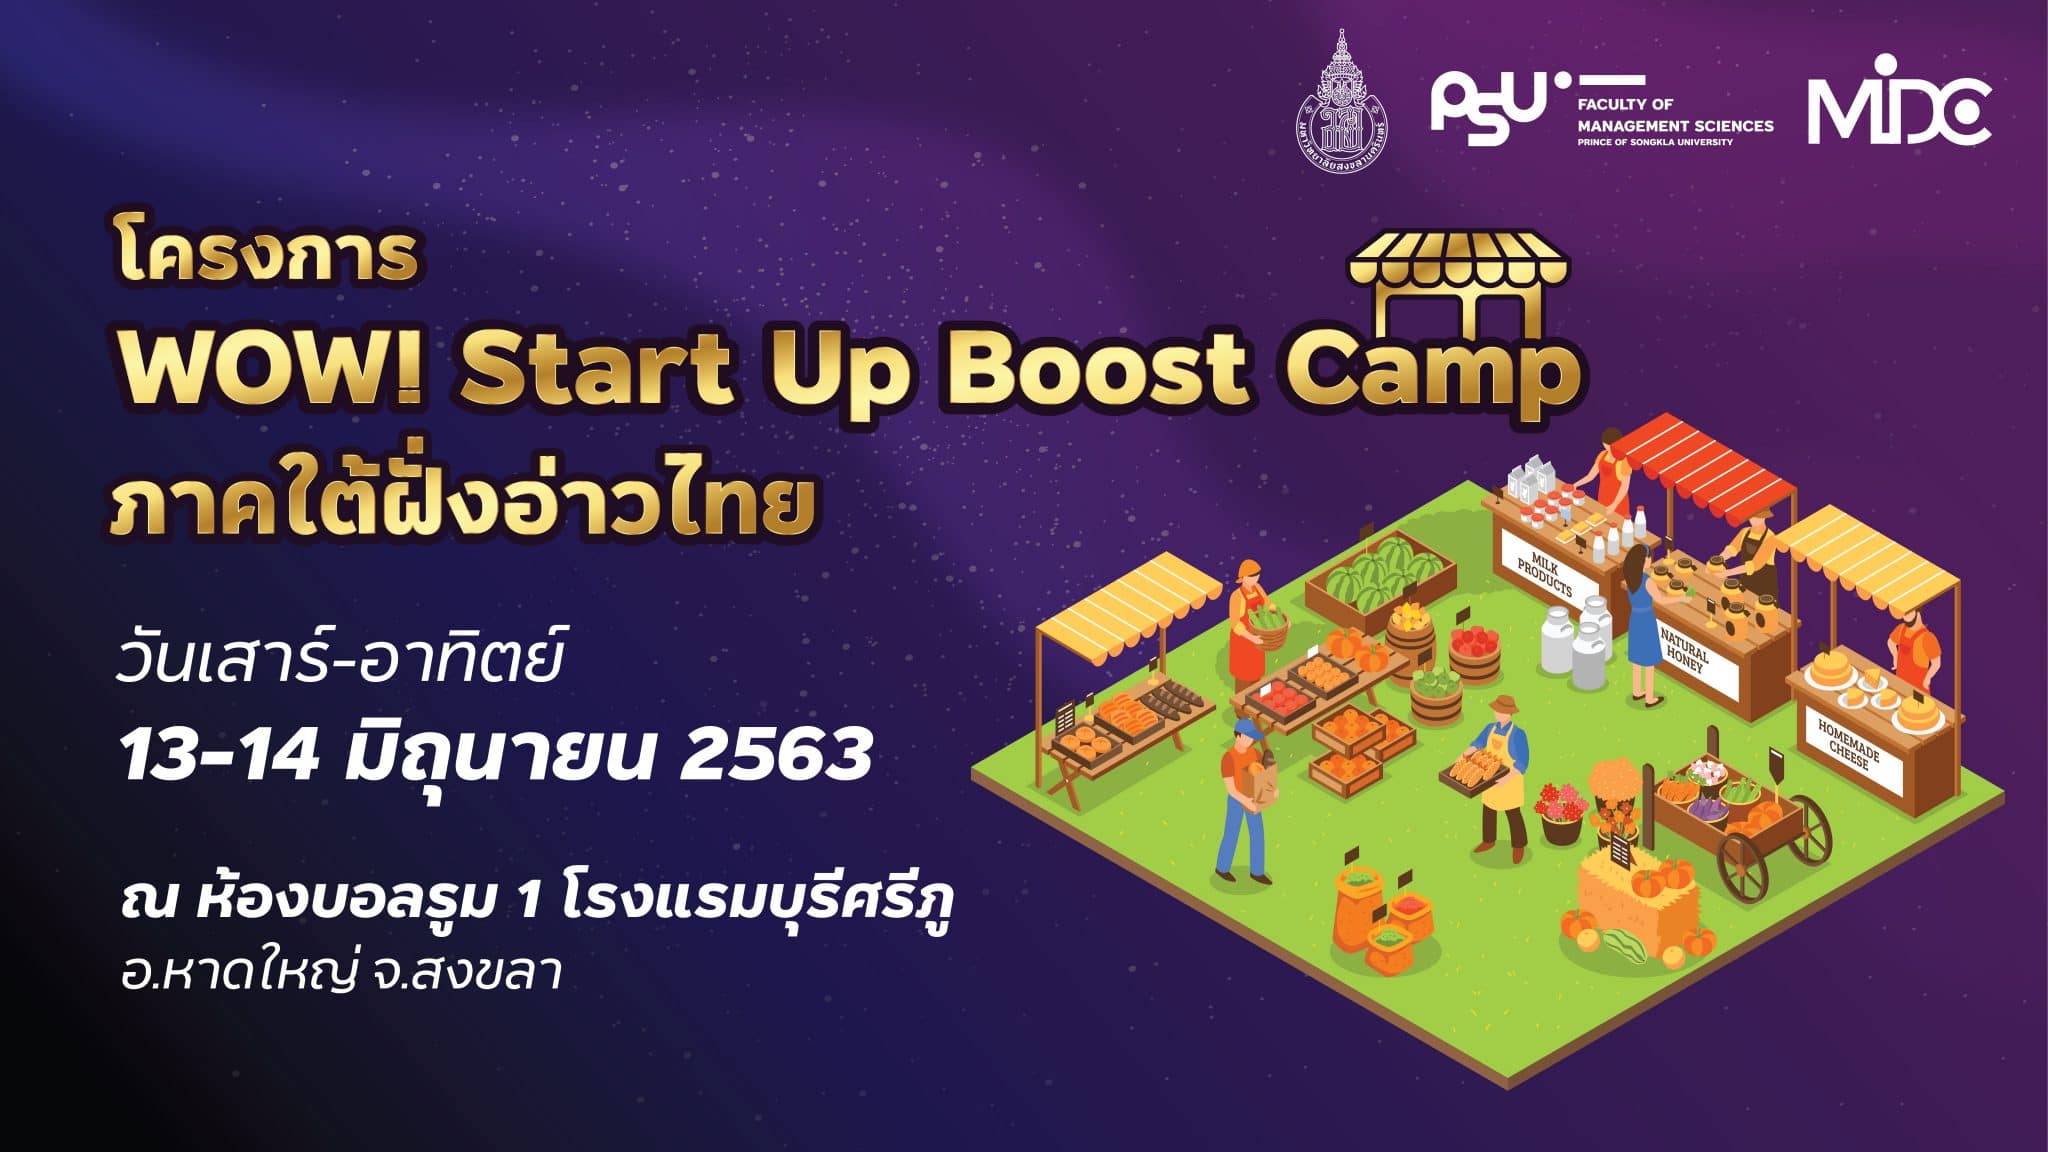 คณะวิทยาการจัดการ ม.อ. จัดอบรม WOW! Start p Boost Camp" พัฒนาผู้ประกอบการ SMEs Start Up ภาคใต้ฝั่งอ่าวไทย